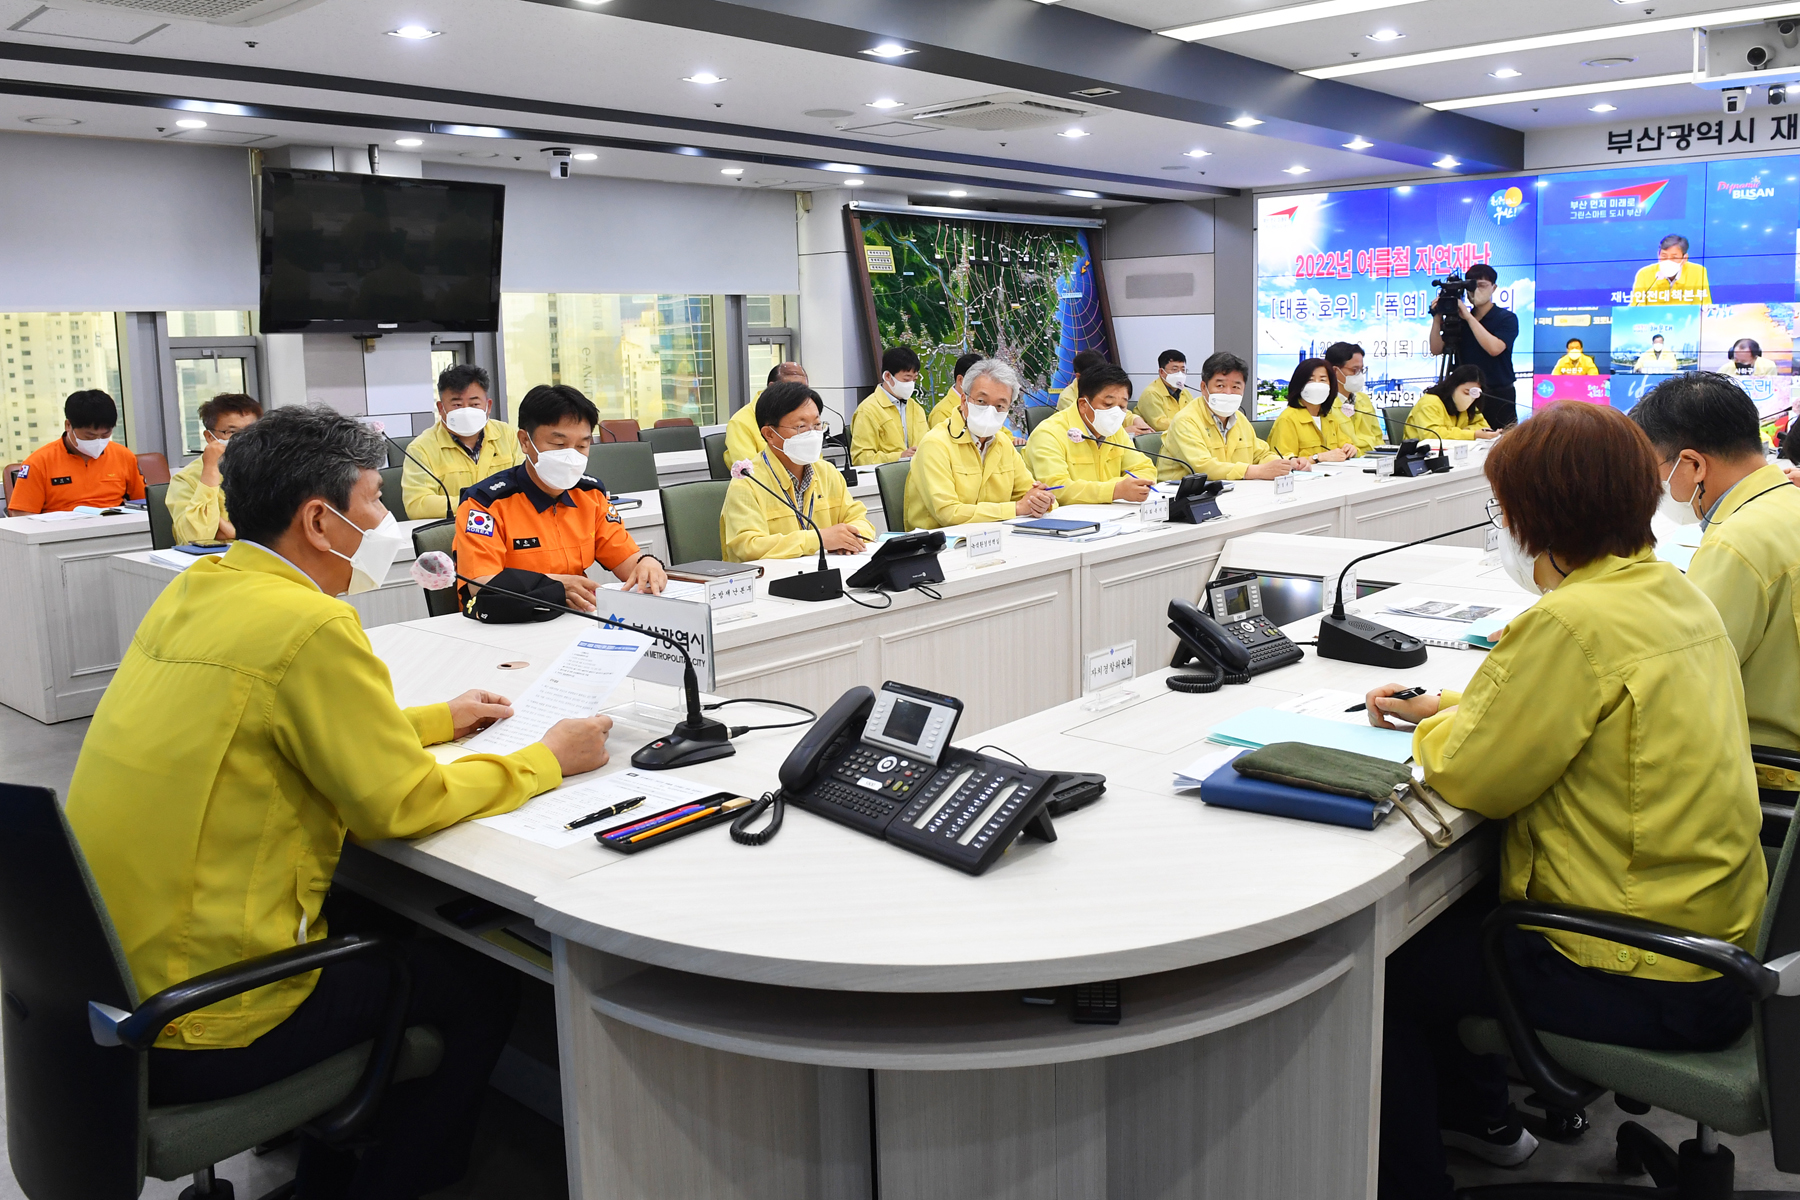 6.23. 09:00 ‘장마·폭염 등 여름철 자연재난 대비 점검회의’ 사진